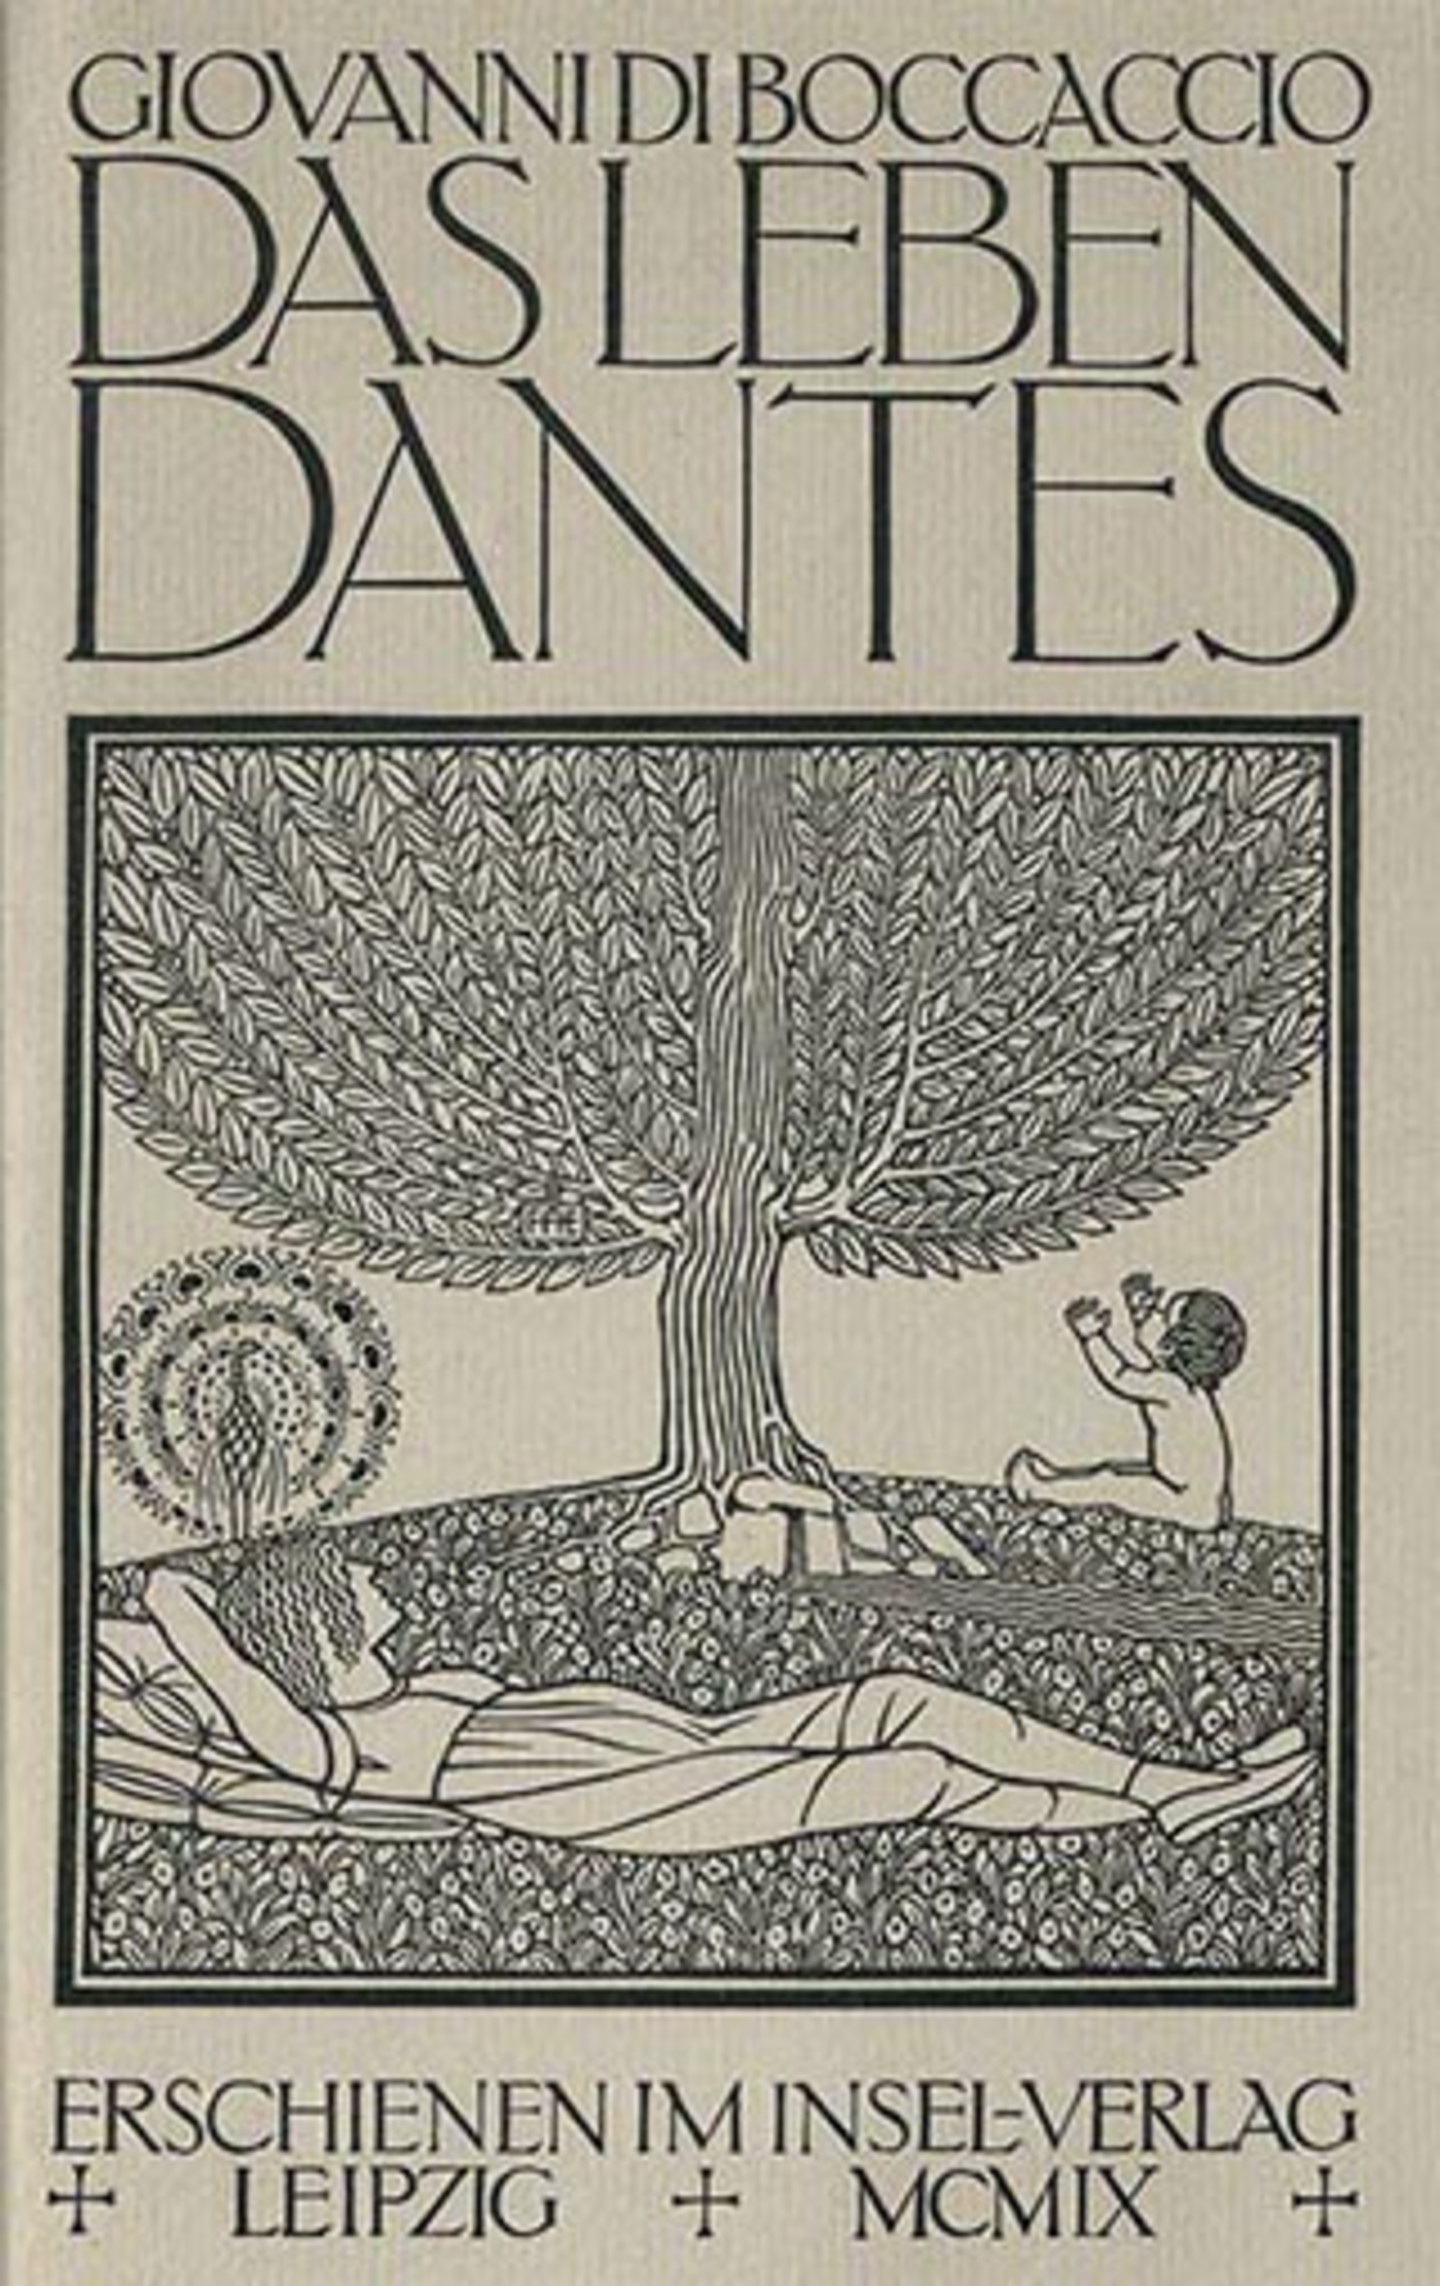 Das Titelblatt von "Das Leben Dantes" von Giovanni baccaccio im Jahr 1909, erschienen im Insel-Verlag in Leipzig. Es bildet einen Baum ab unter dem eine Person liegt und ein Kind sitzt.